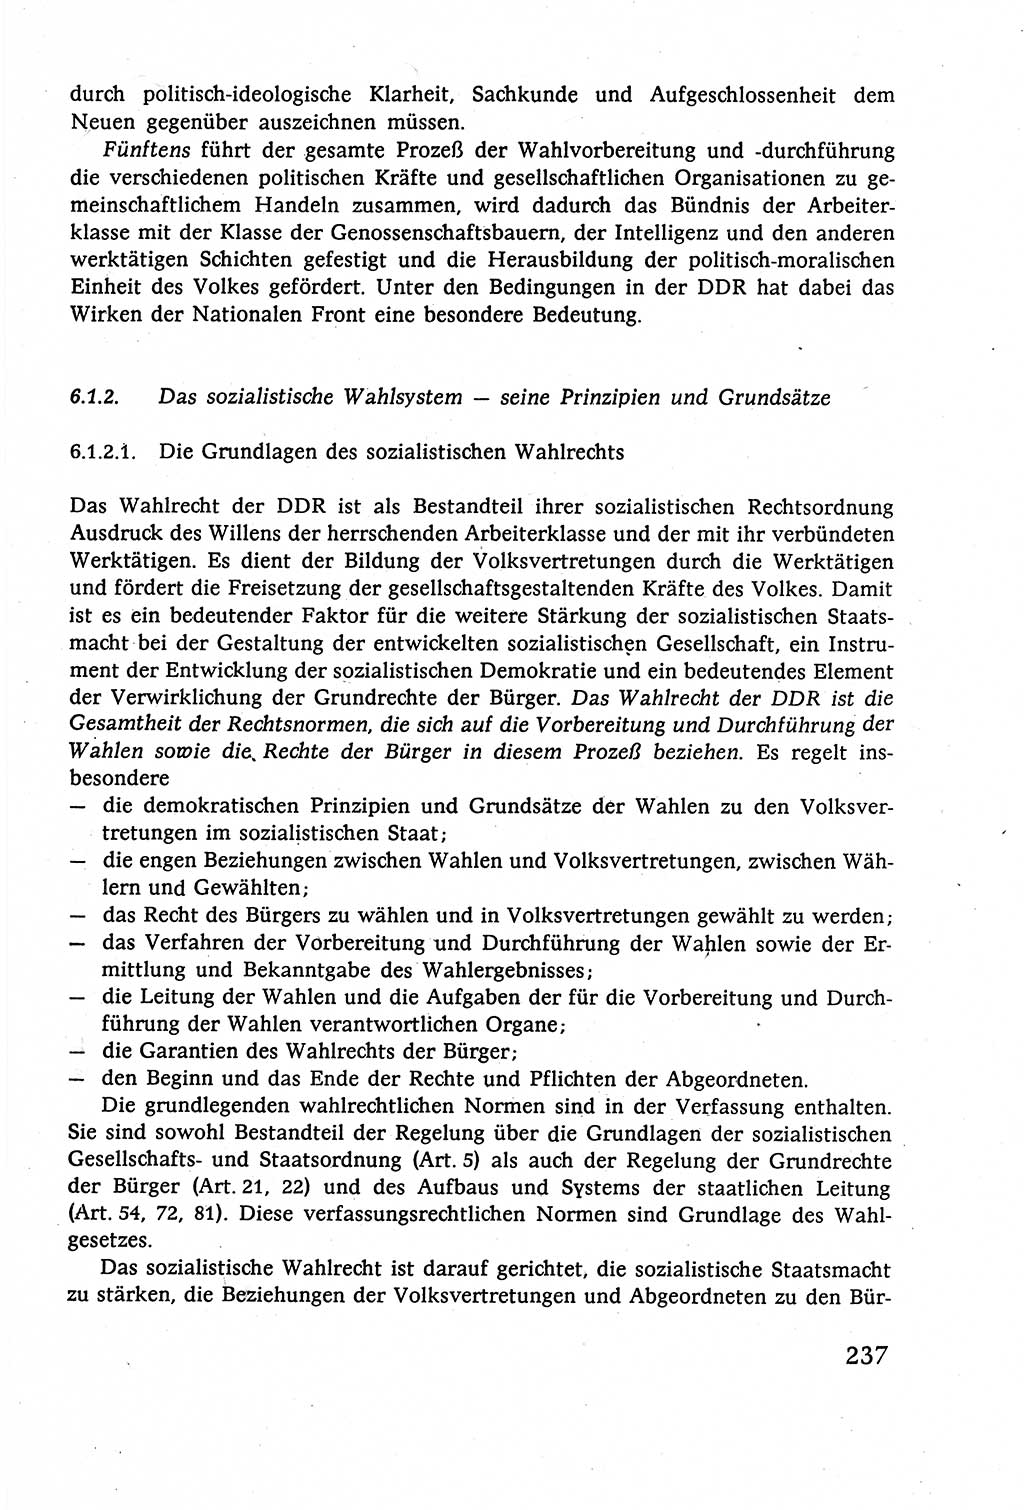 Staatsrecht der DDR (Deutsche Demokratische Republik), Lehrbuch 1977, Seite 237 (St.-R. DDR Lb. 1977, S. 237)